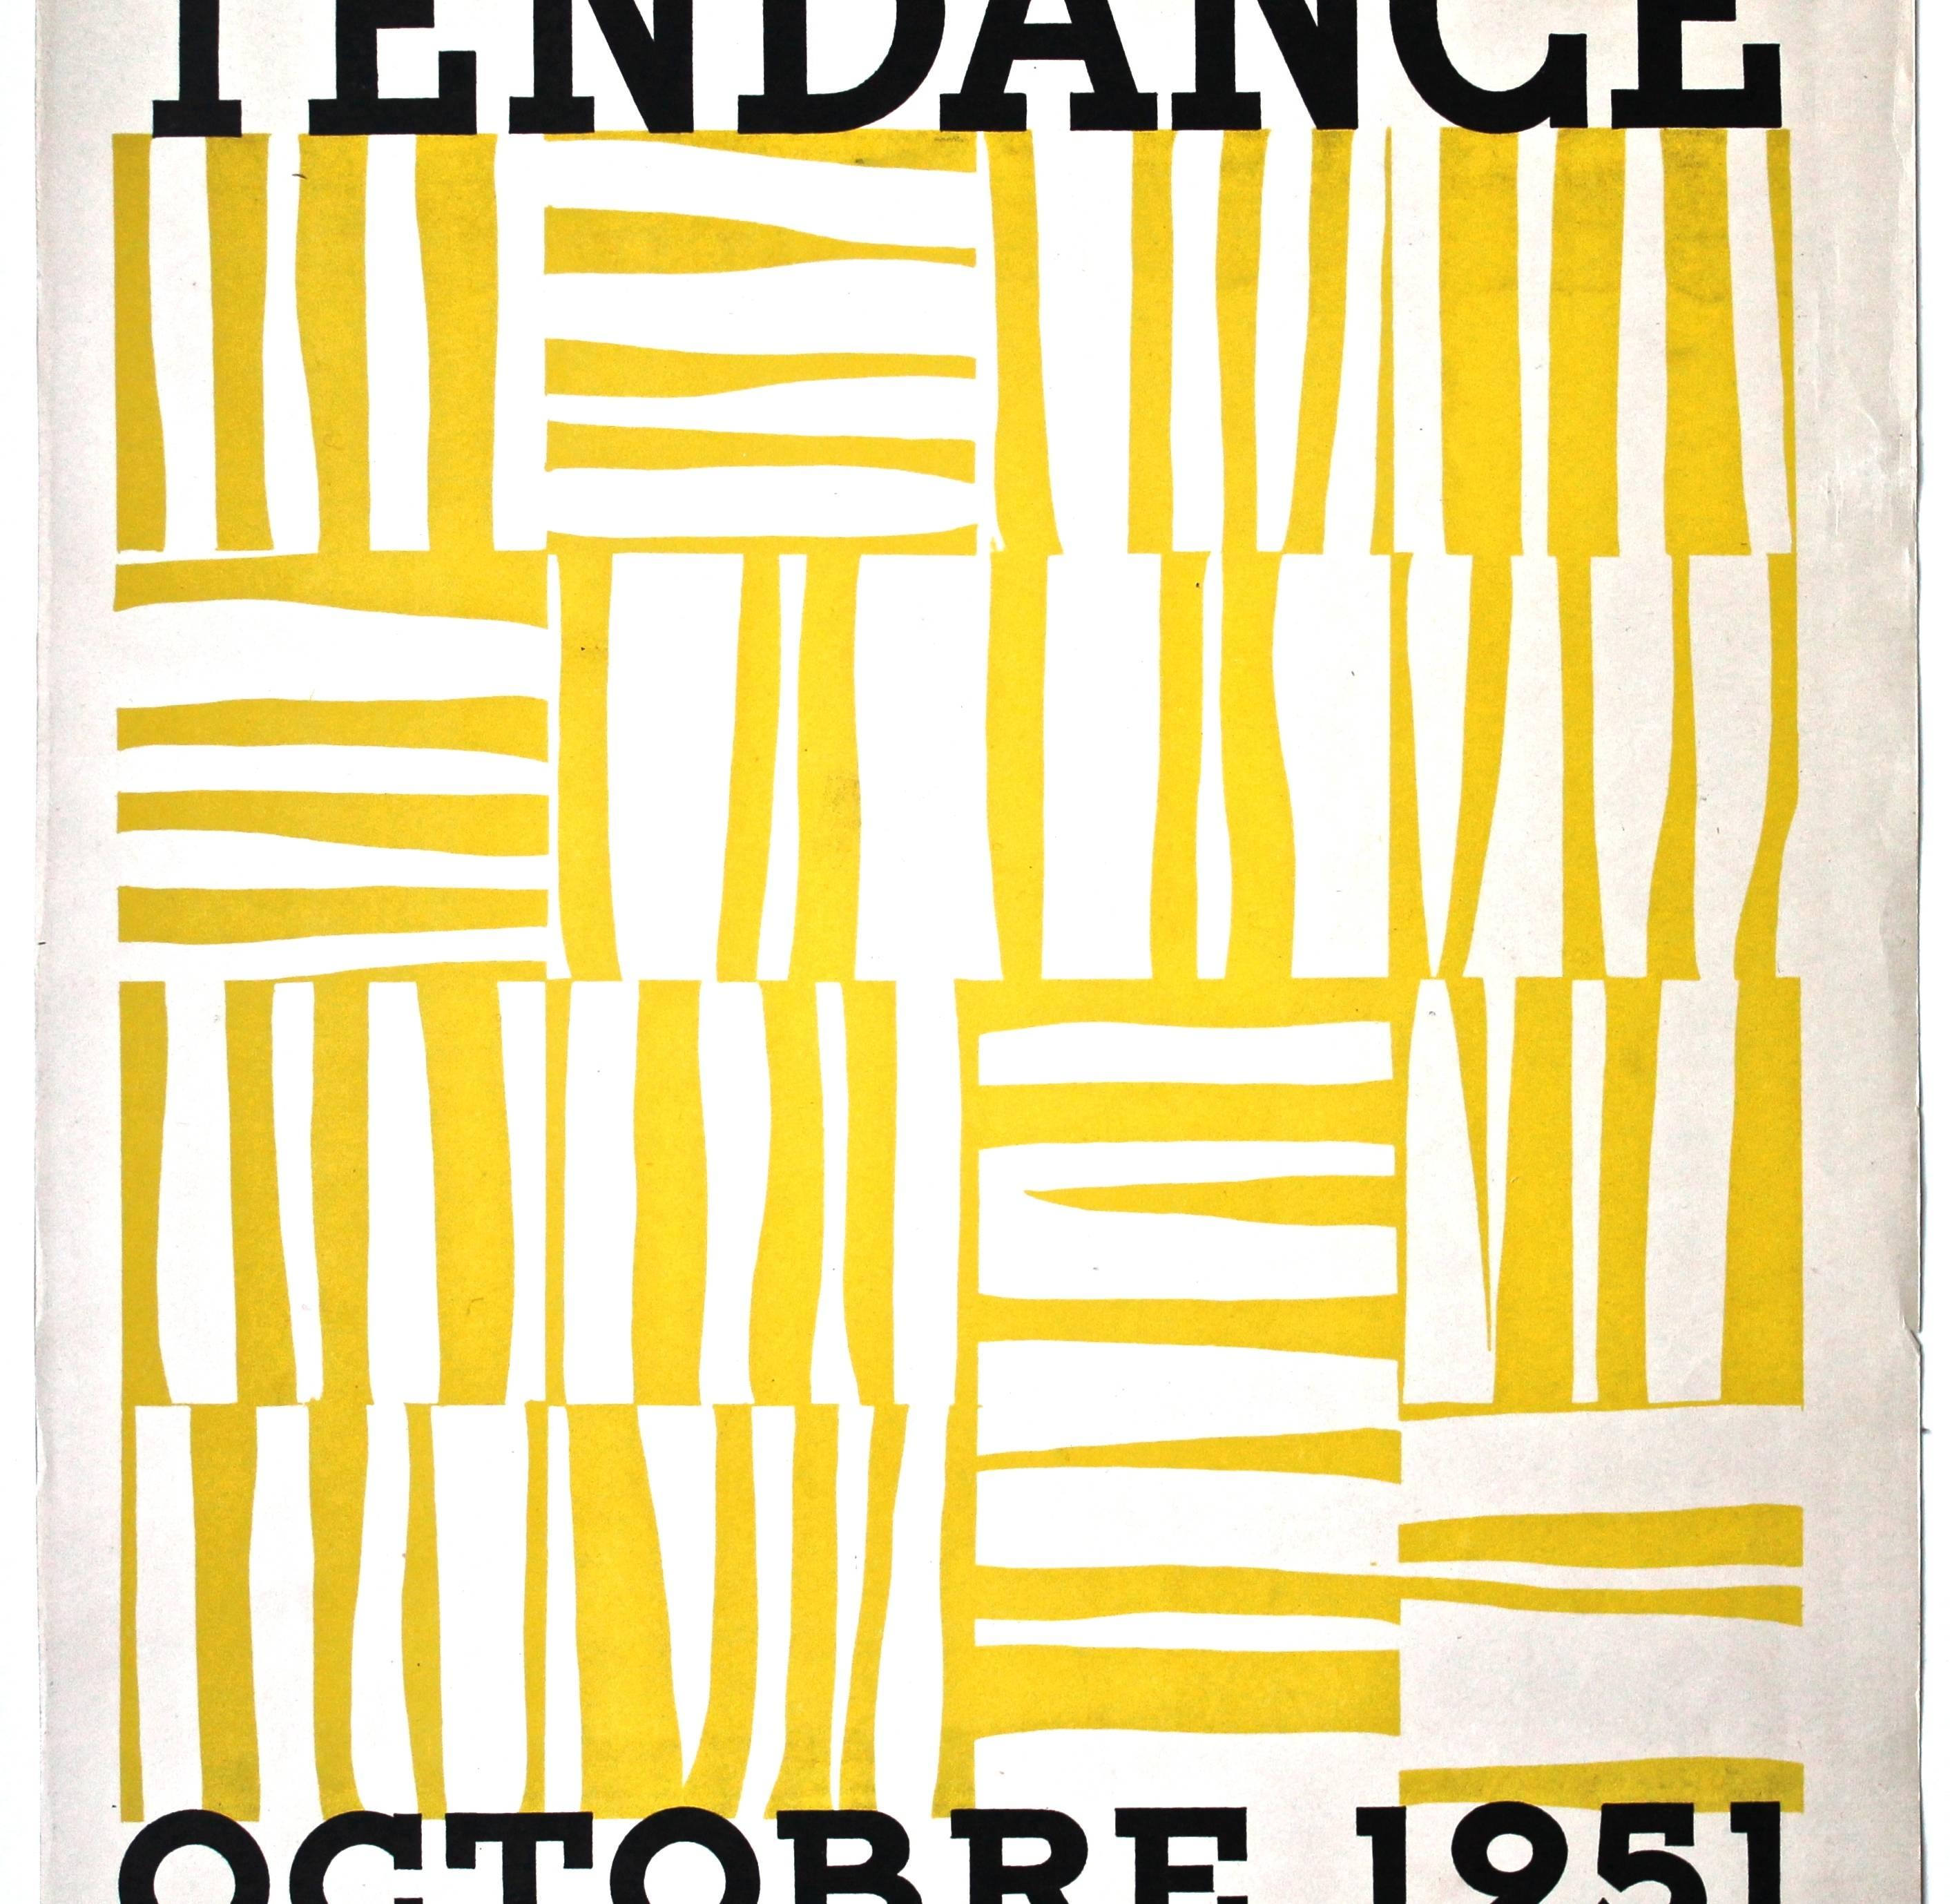 Il s'agit d'une affiche très rare (non mentionnée dans Waldman 'Ellsworth Kelly drawings, collages, prints' 1971.) et extrêmement importante pour ce qui était peut-être la première exposition (de groupe) de Kelly. Sérigraphie en jaune et noir.